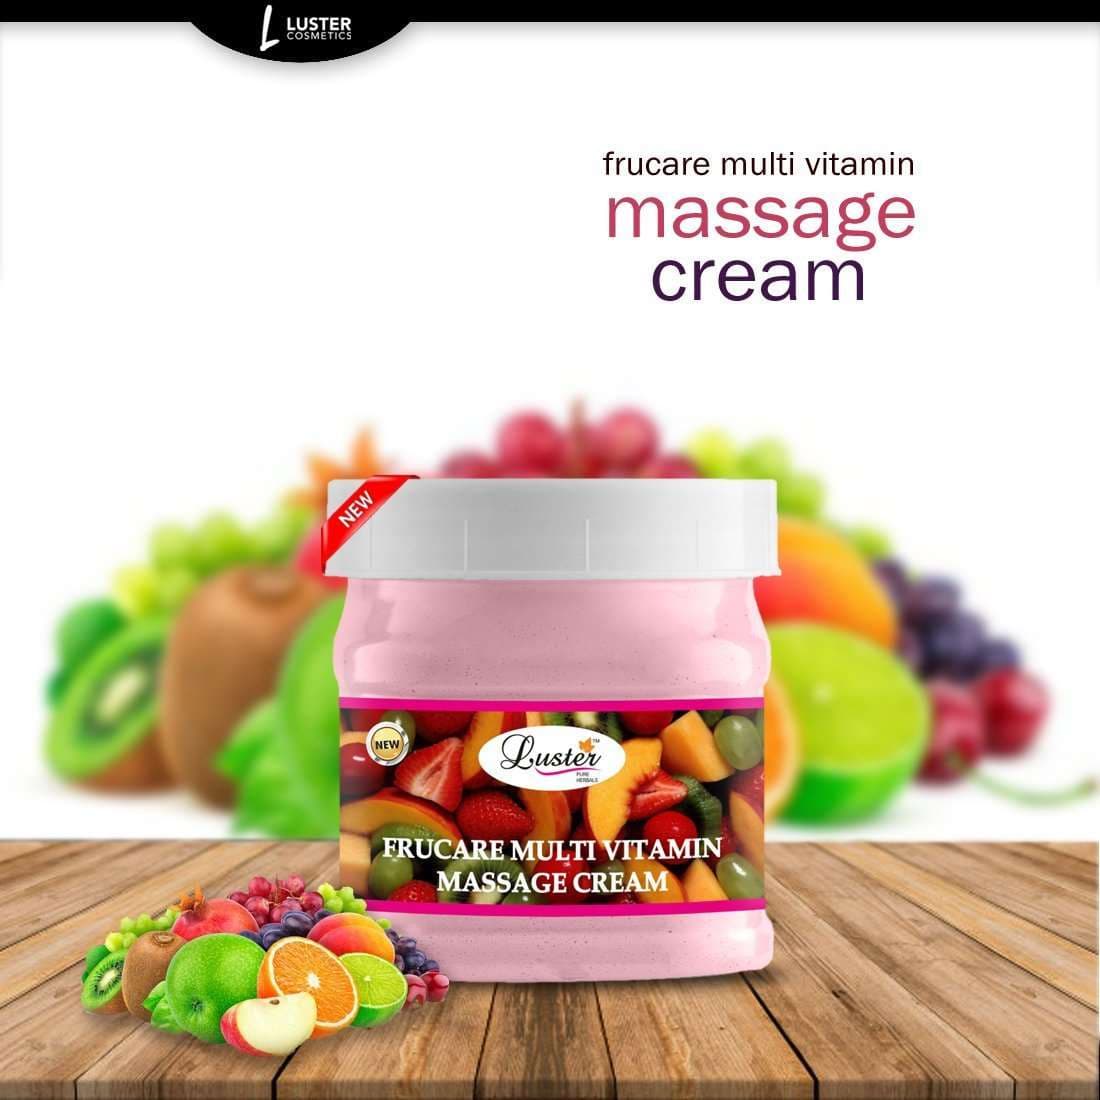 Luster Frucare Multi Vitamin Facial Massage Cream (Paraben & Sulfate Free)-500ml - Luster Cosmetics